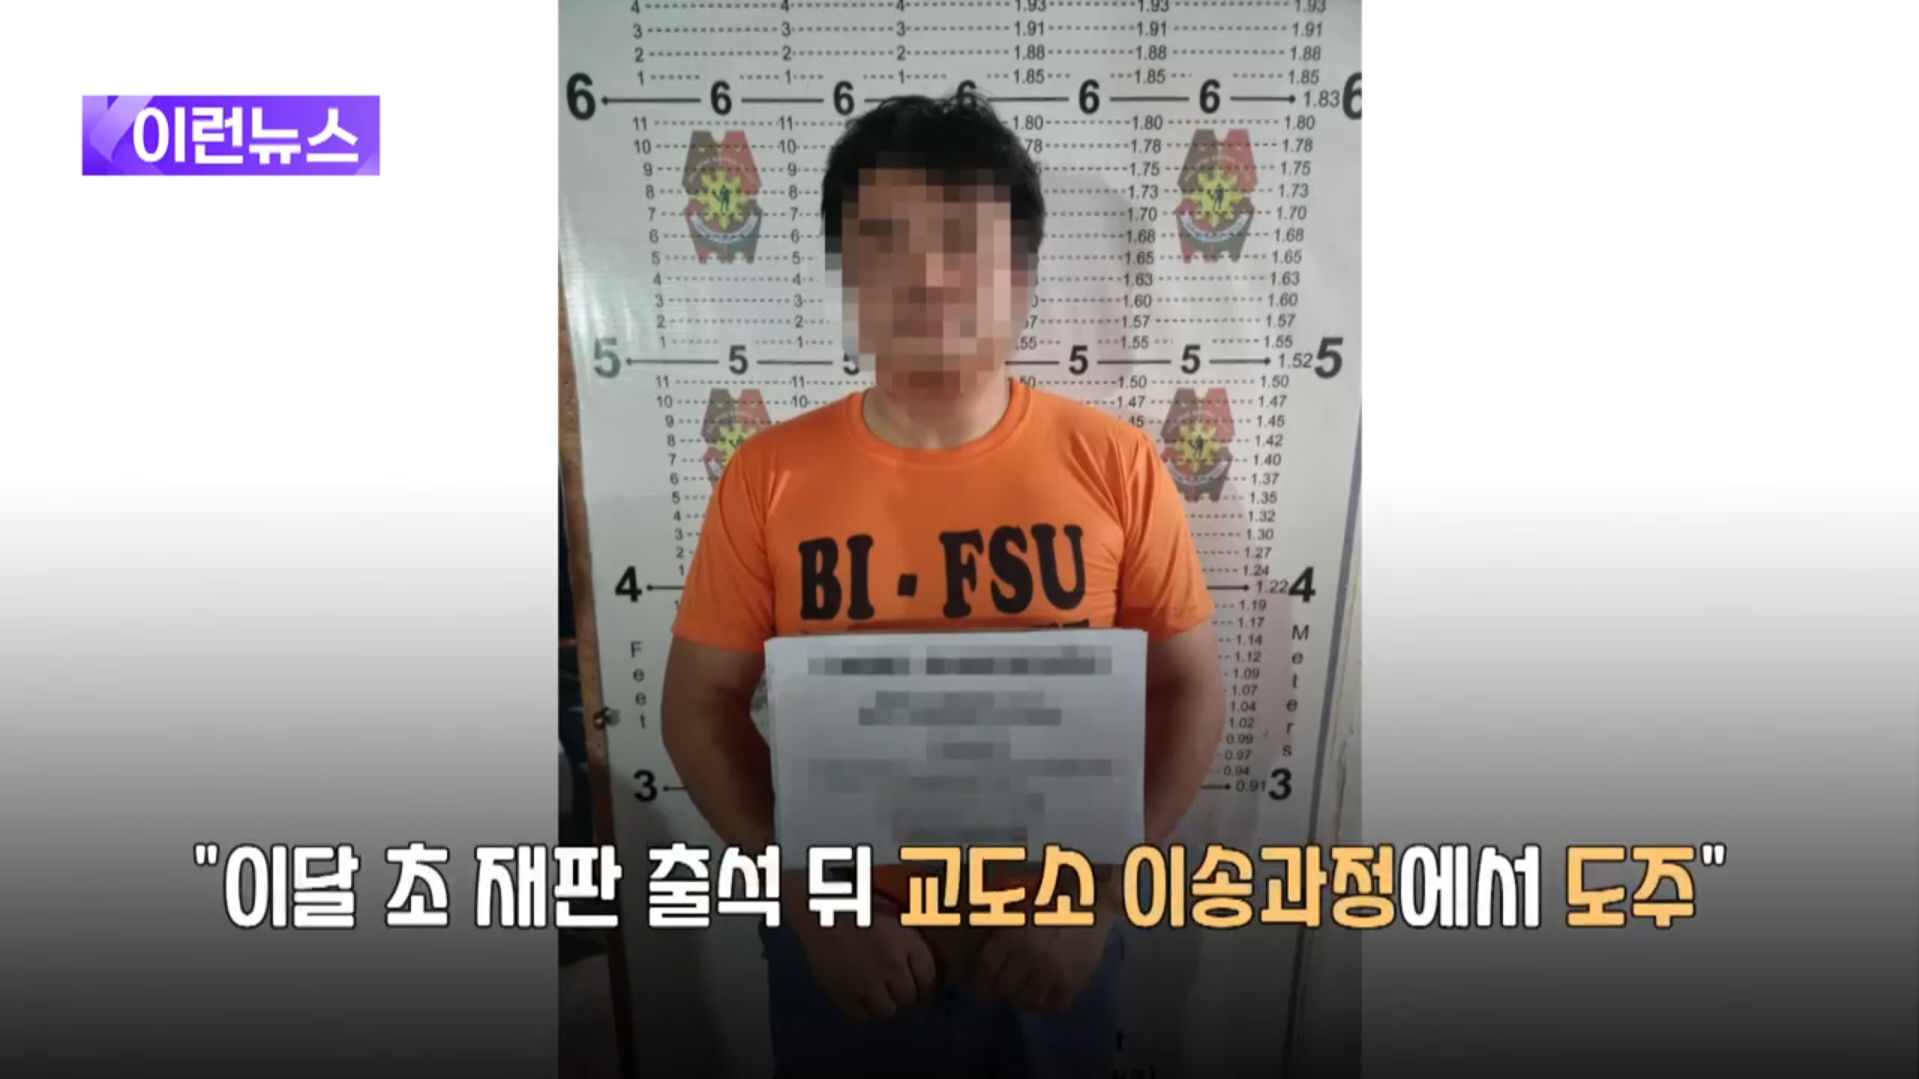 보이스피싱의 상징 김미영 팀장 필리핀 탈옥사건